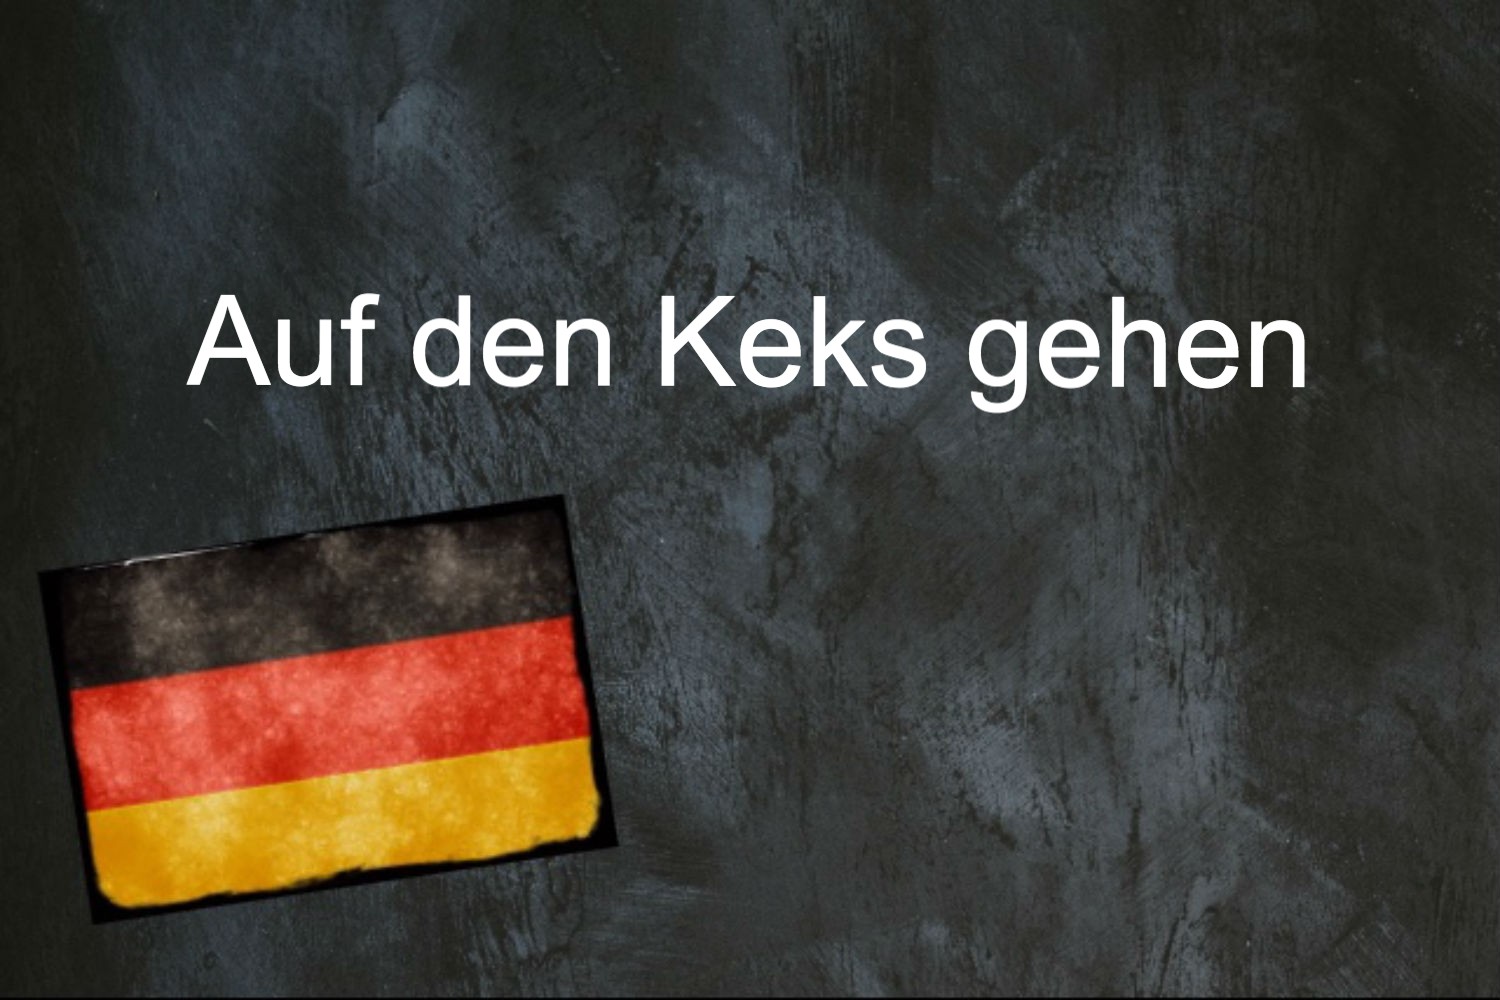 German phrase of the day: Auf den Keks gehen